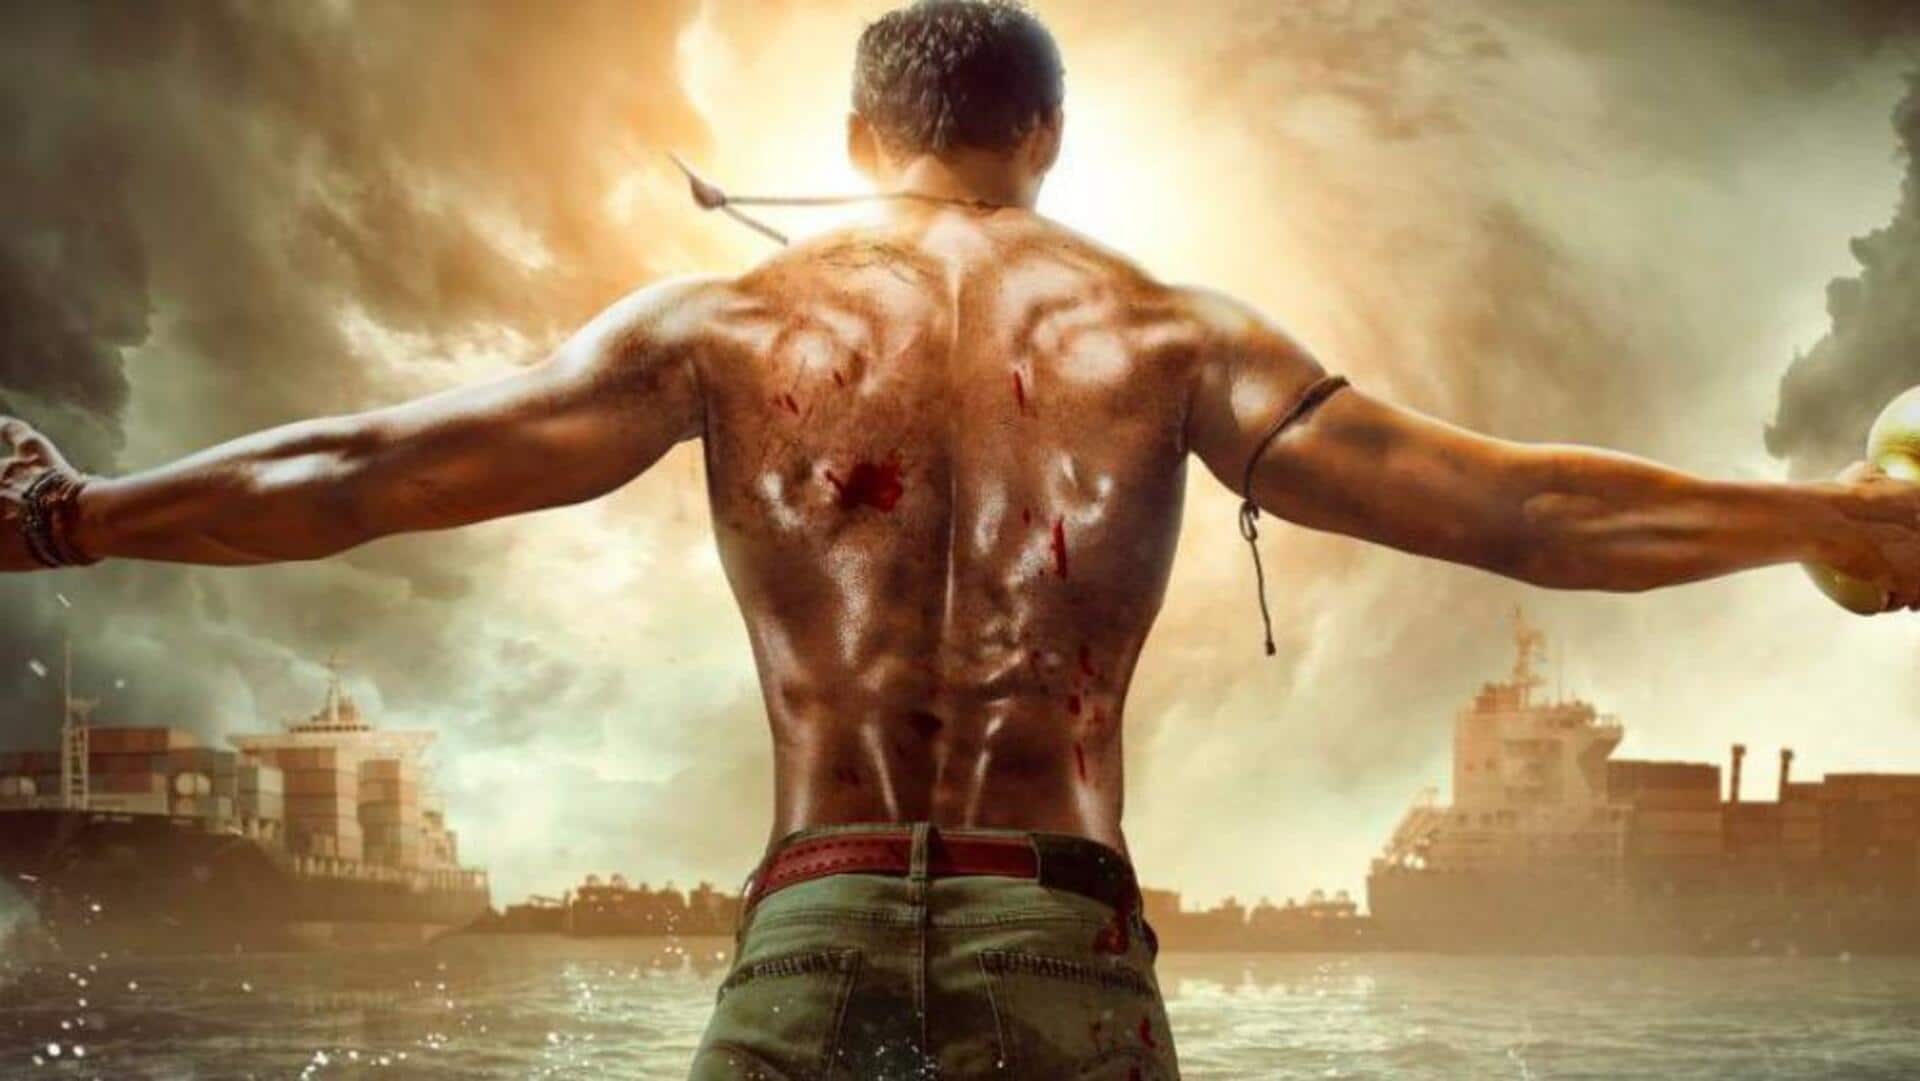 फिल्म 'छत्रपति' का हिंदी रीमेक इस दिन होगा रिलीज, बेल्लमकोंडा साई श्रीनवास करेंगे बॉलीवुड डेब्यू